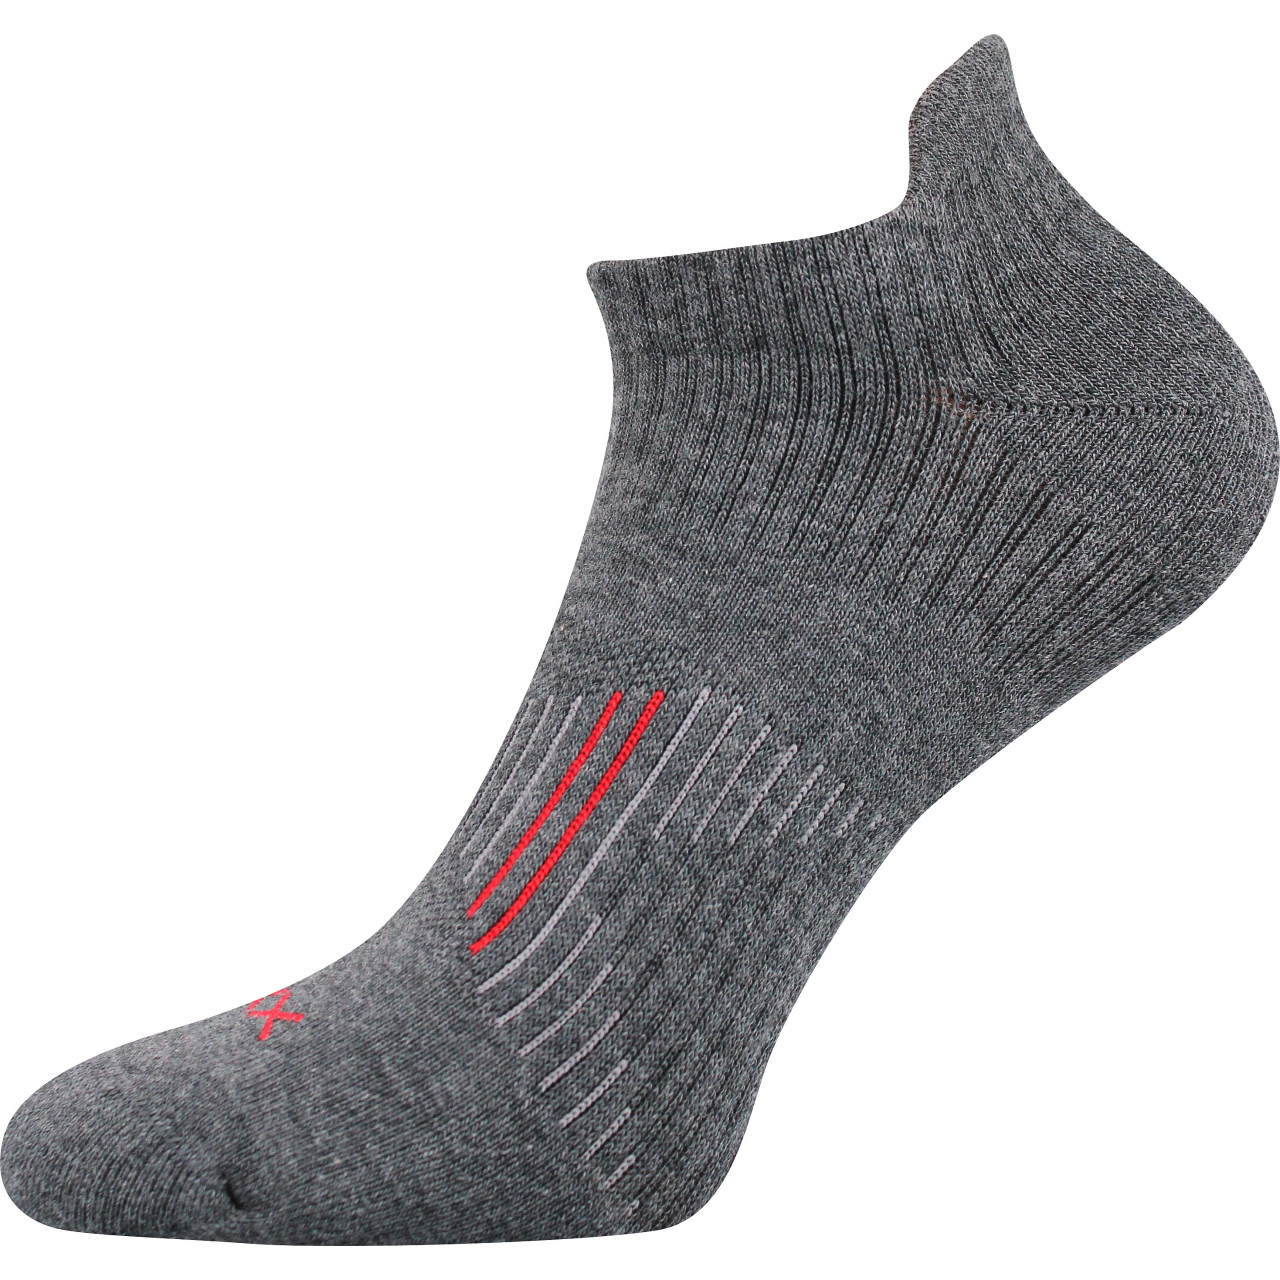 Ponožky sportovní unisex Voxx Patriot A - tmavě šedé, 35-38